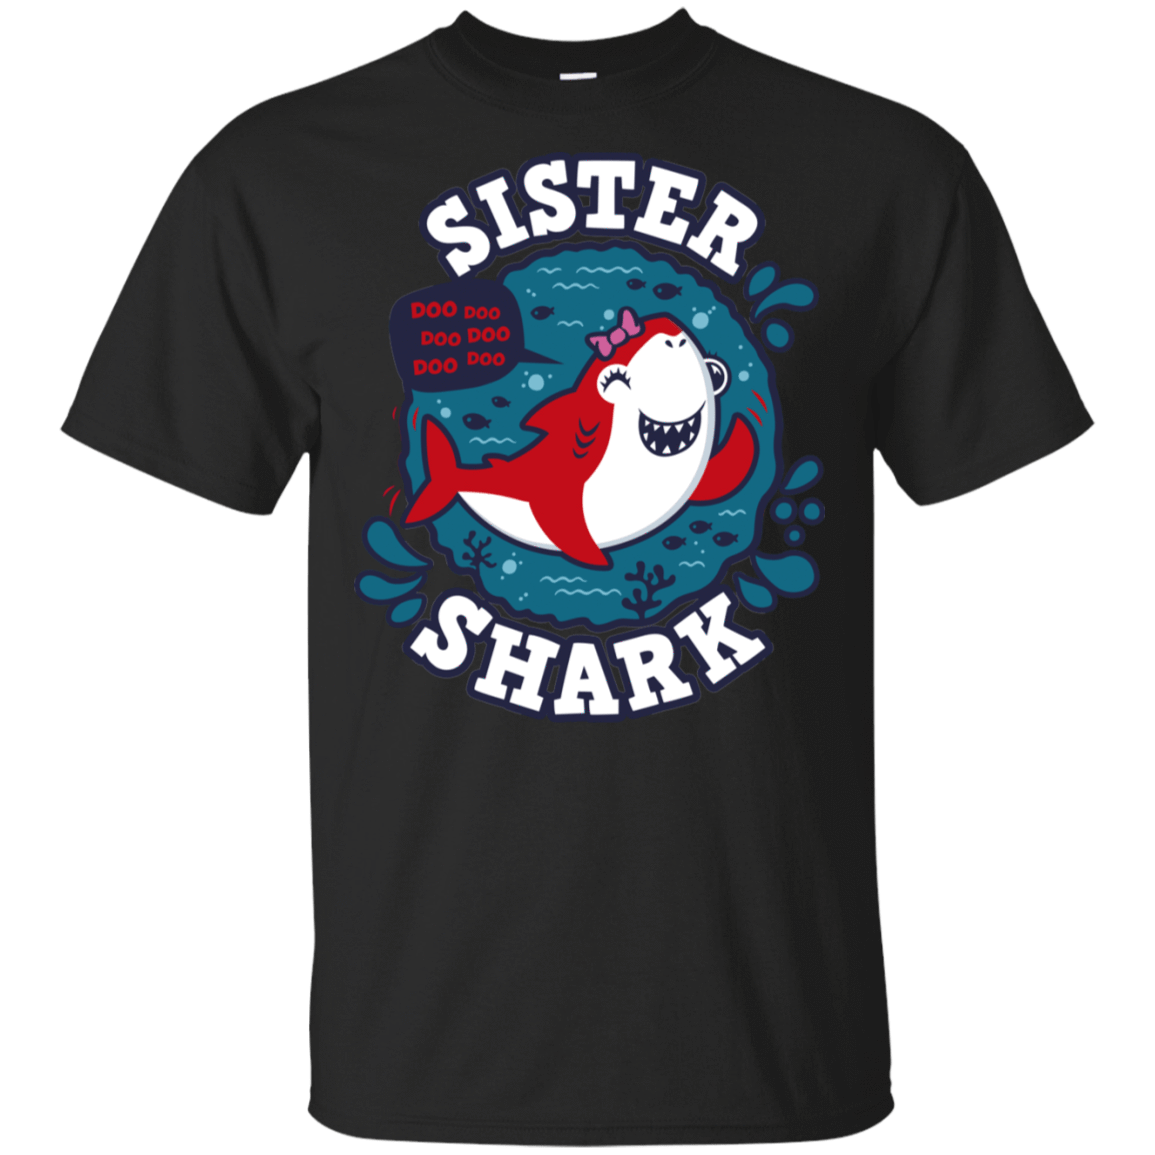 T-Shirts Black / S Shark Family trazo - Sister T-Shirt